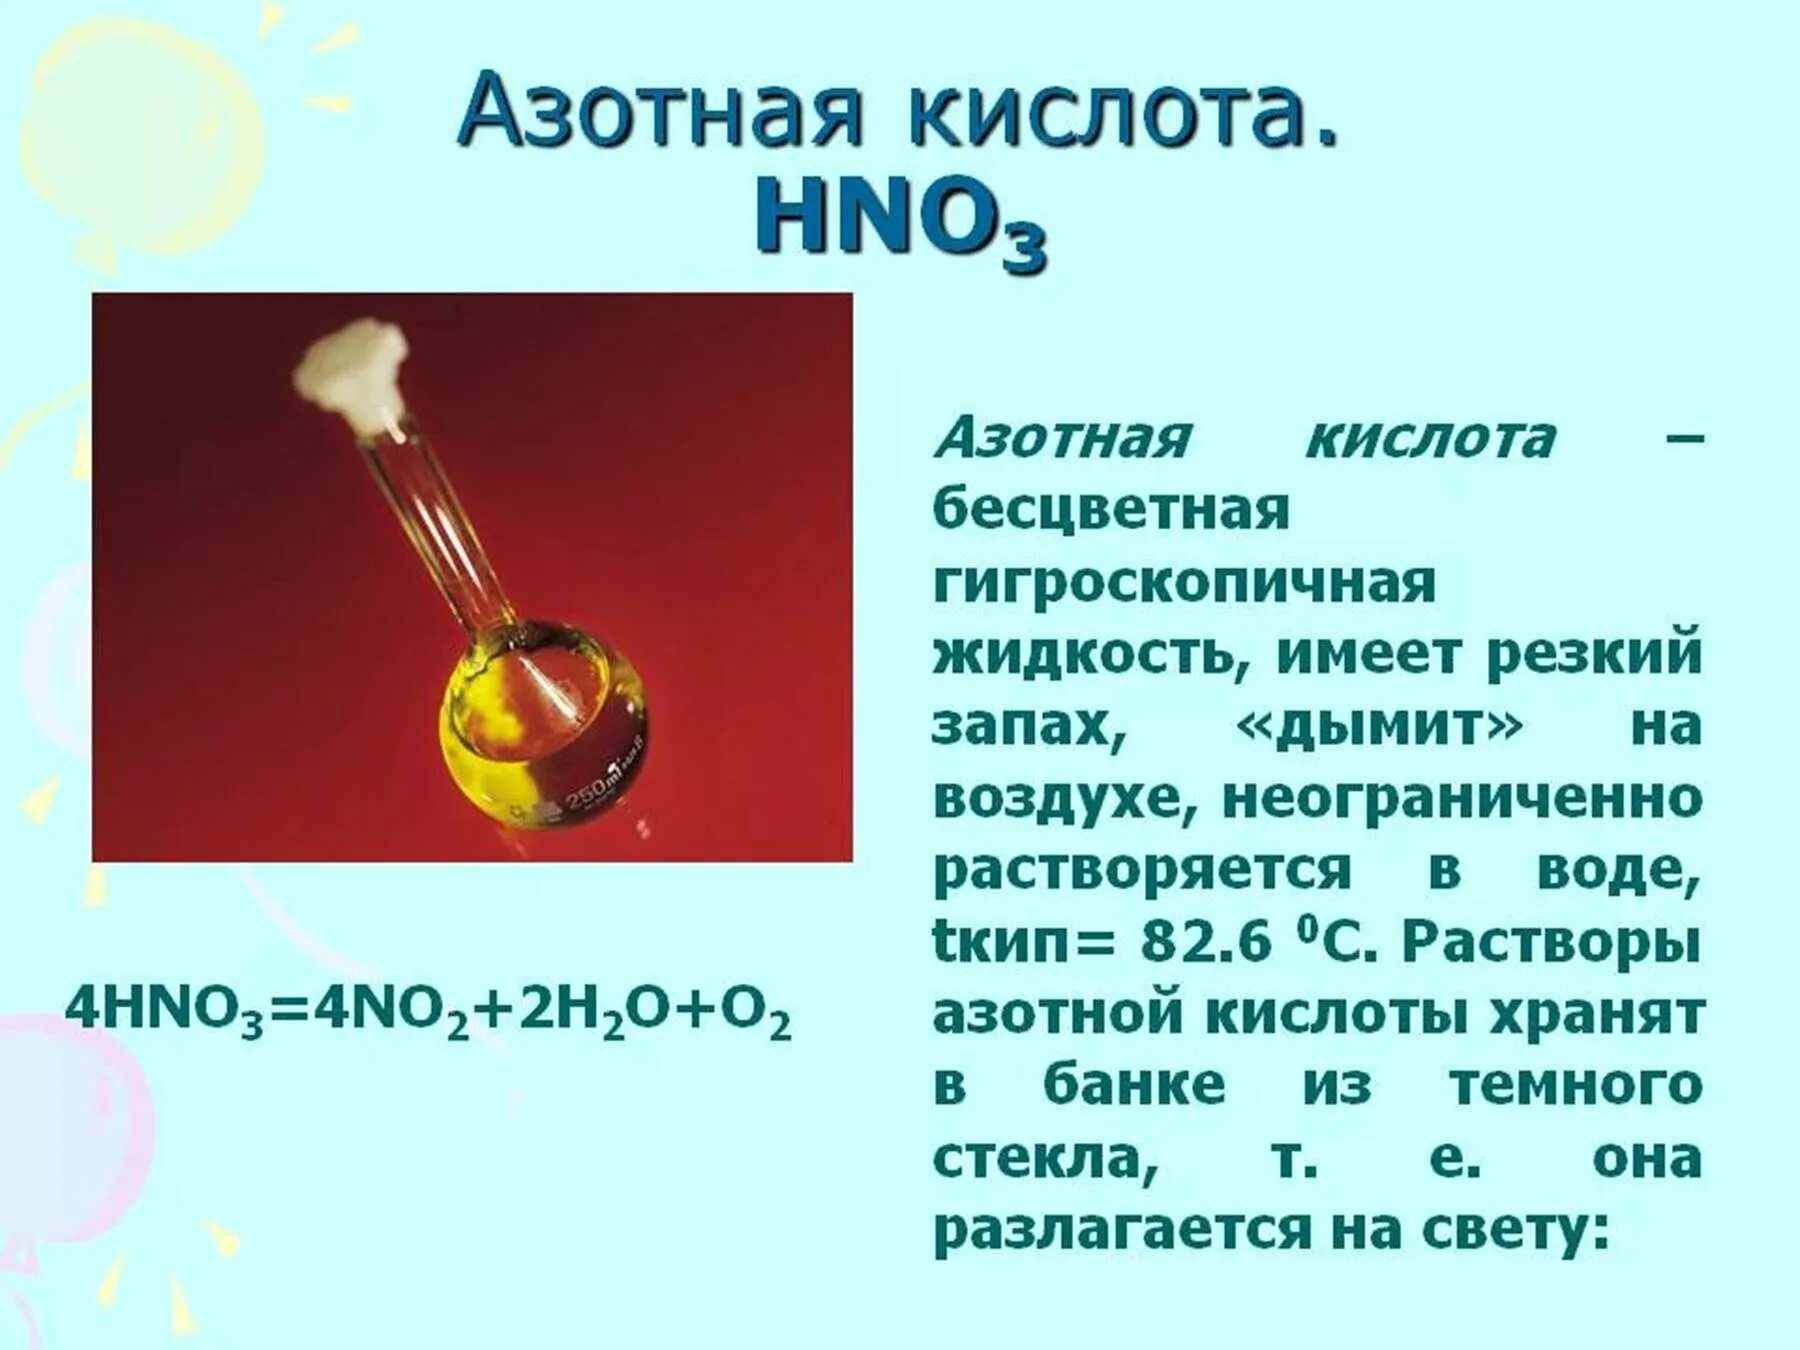 Азотная кислота без запаха. Азотная кислота hno3. Азотная кислота обладает резким запахом. Слайд азотная кислота. Физические св ва азотной кислоты.